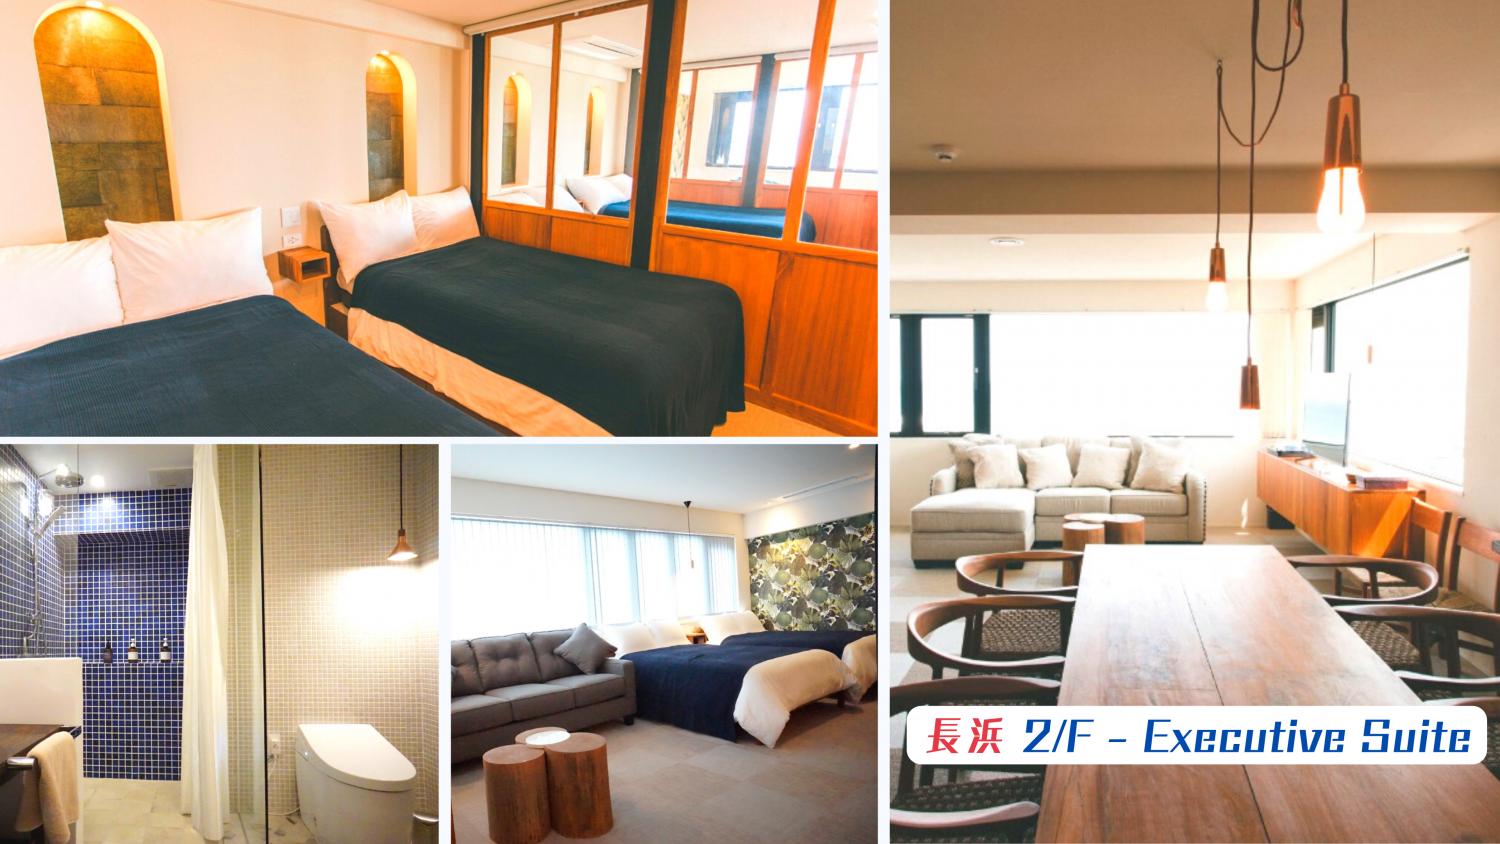 【Okinawa】沖繩Blue Steak Wonder Yomitan NAGAHAMA / SENAHA公寓式酒店2晚自由行套票